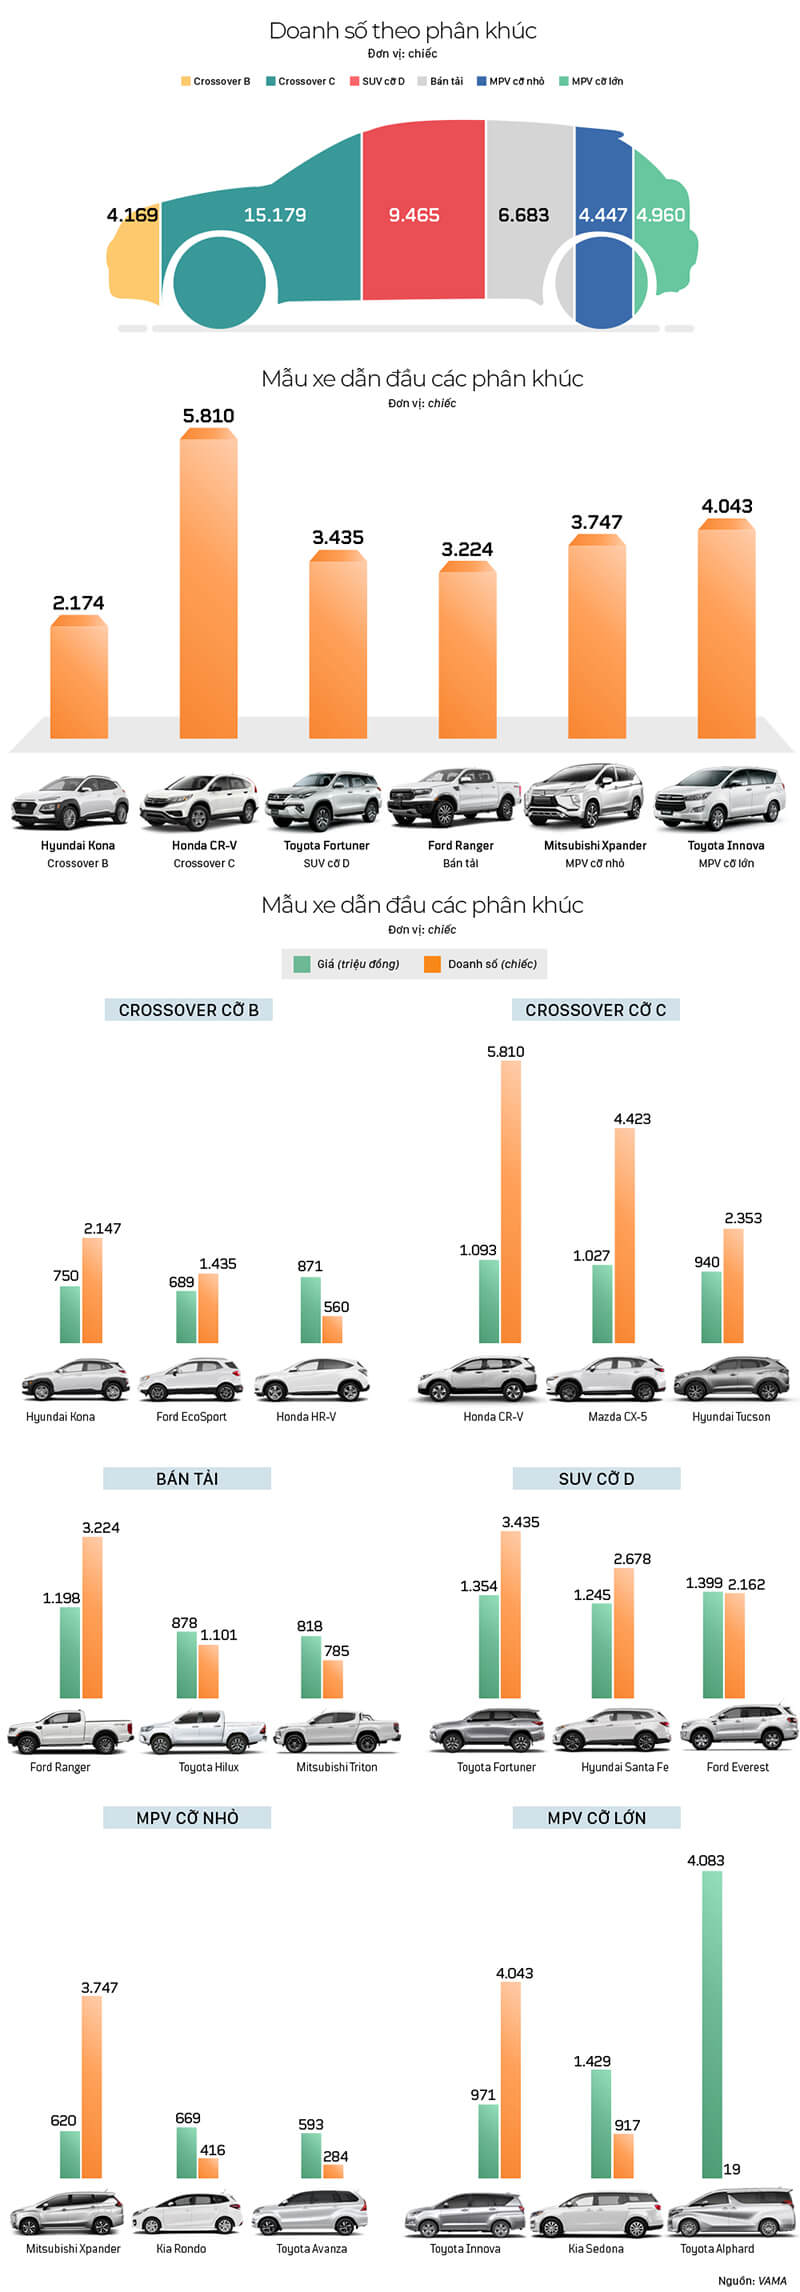 infographic-doanh-so-xe-gam-cao-4-thang-dau-nam-2019-muaxebanxe-com